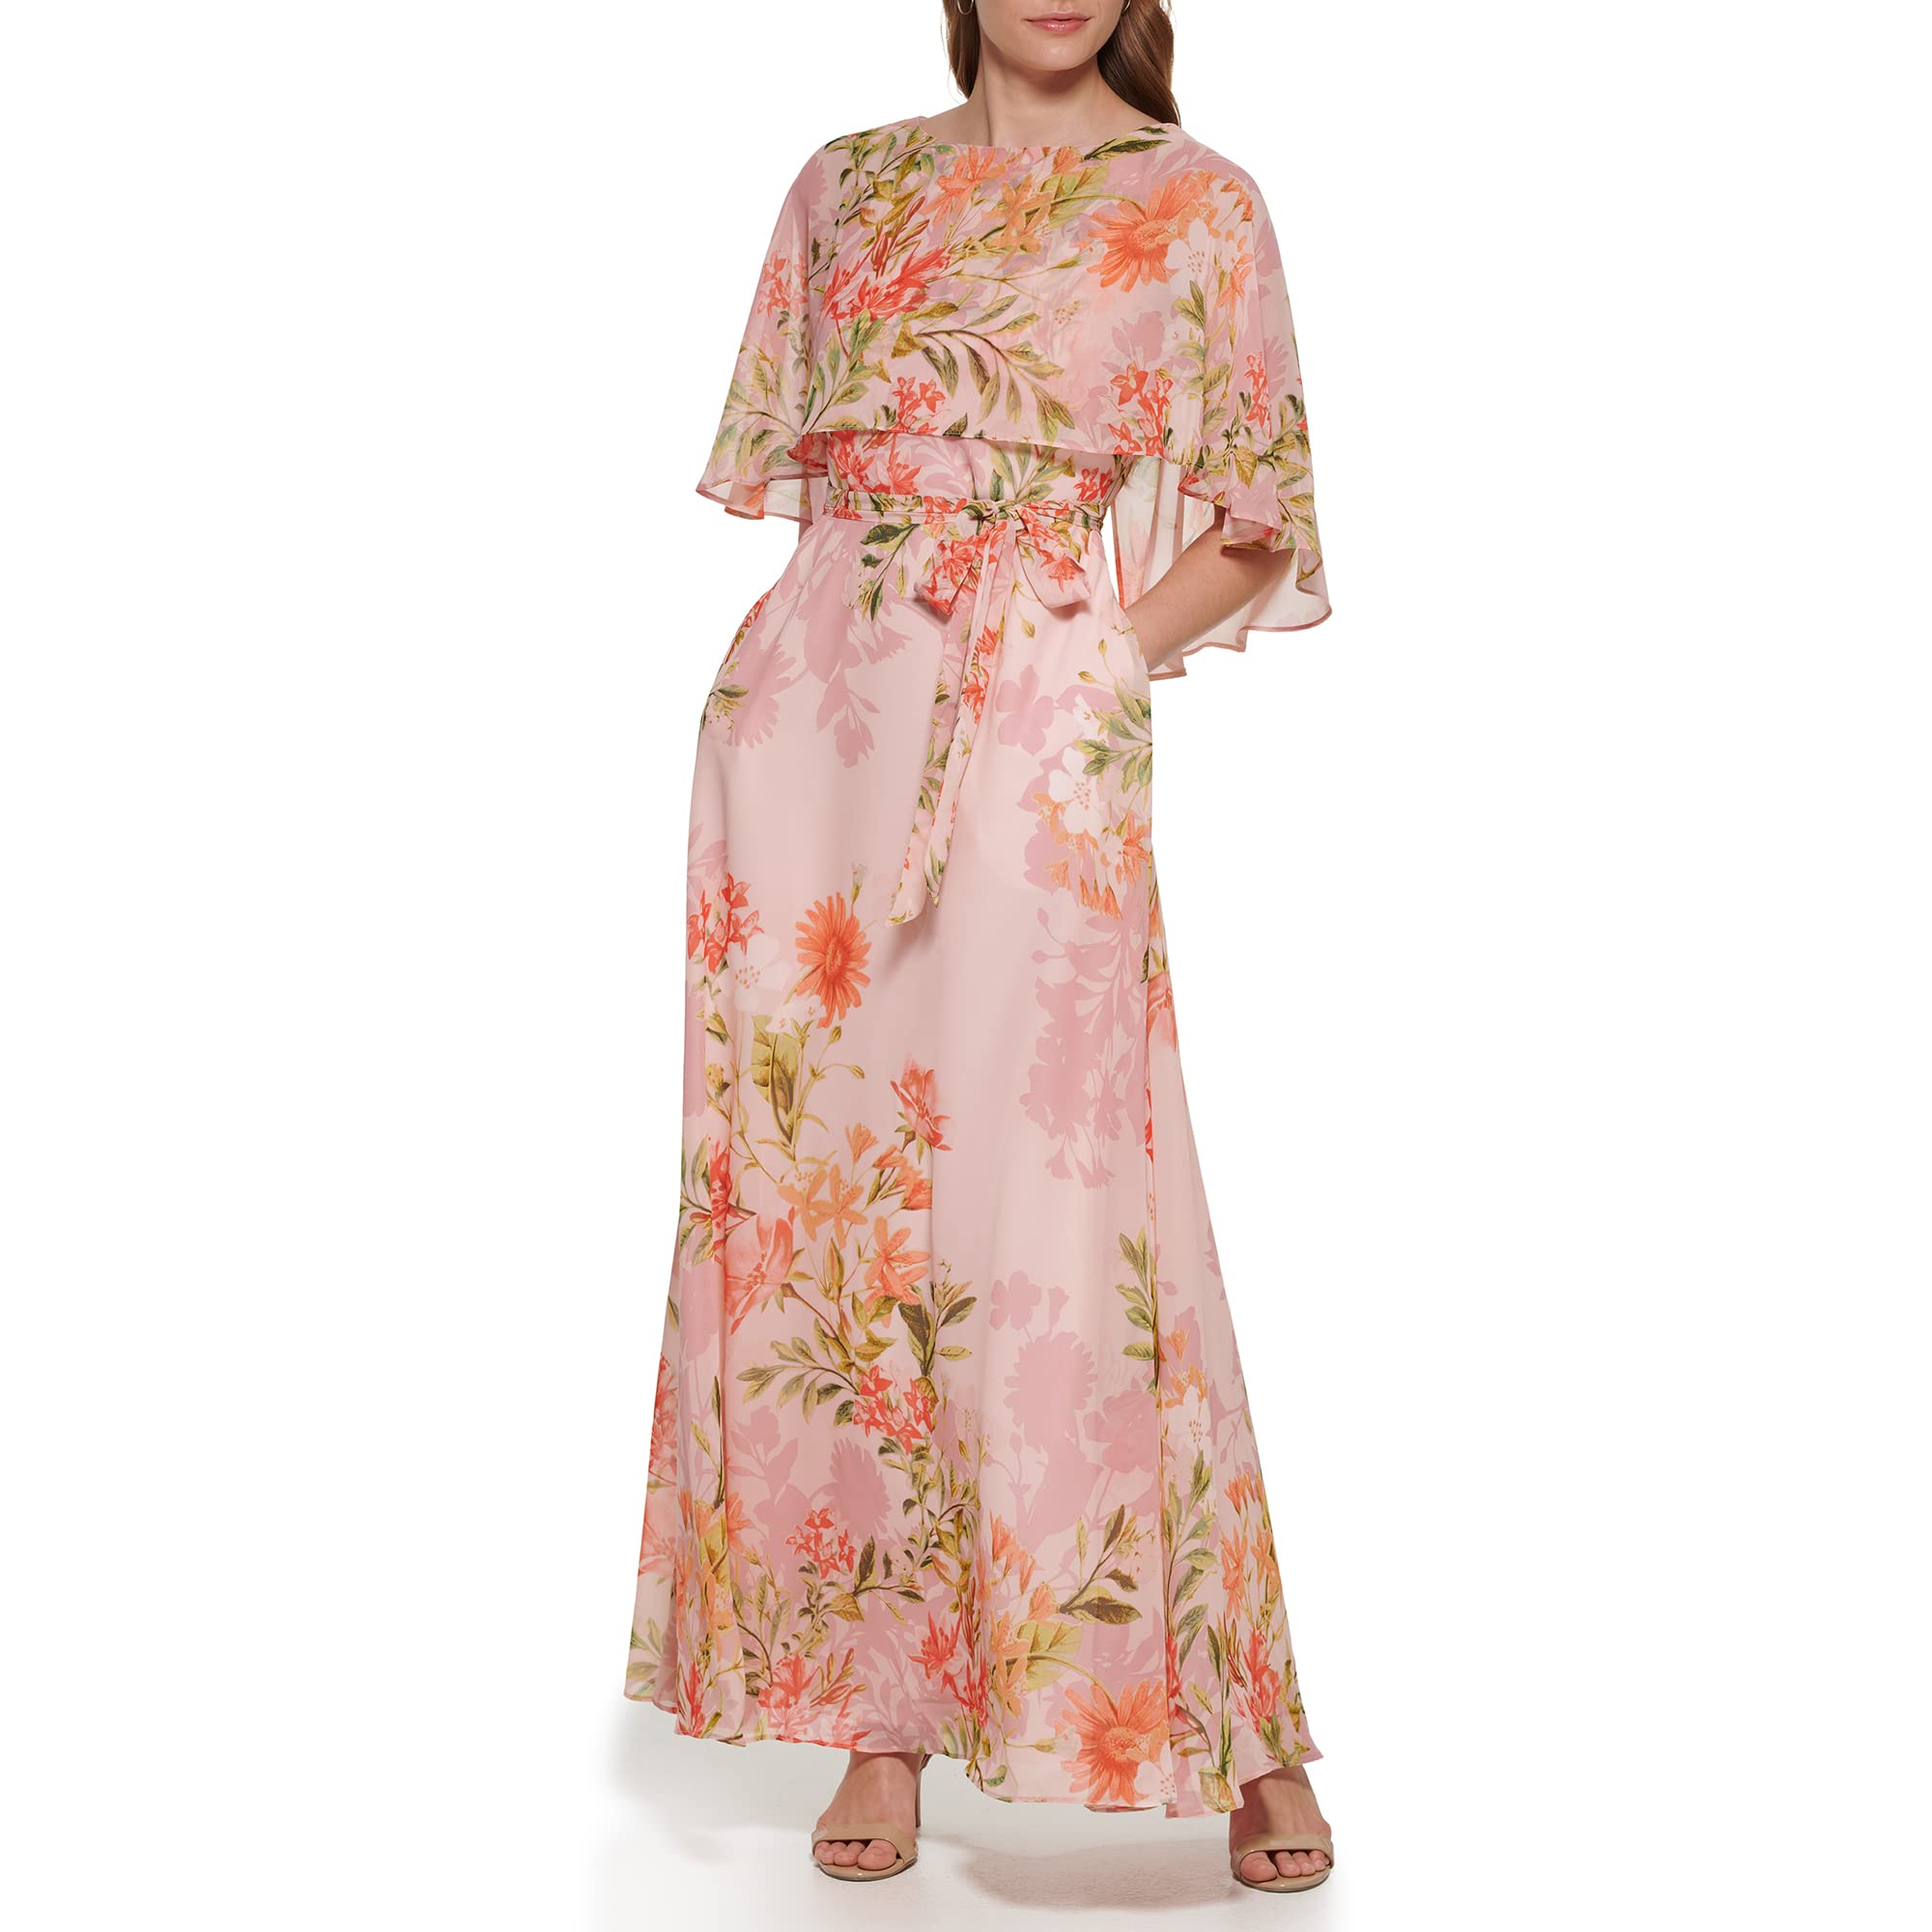 Eliza J Women's Maxi Style Caplet Chiffon Elbow Sleeve Jewel Neck Dress